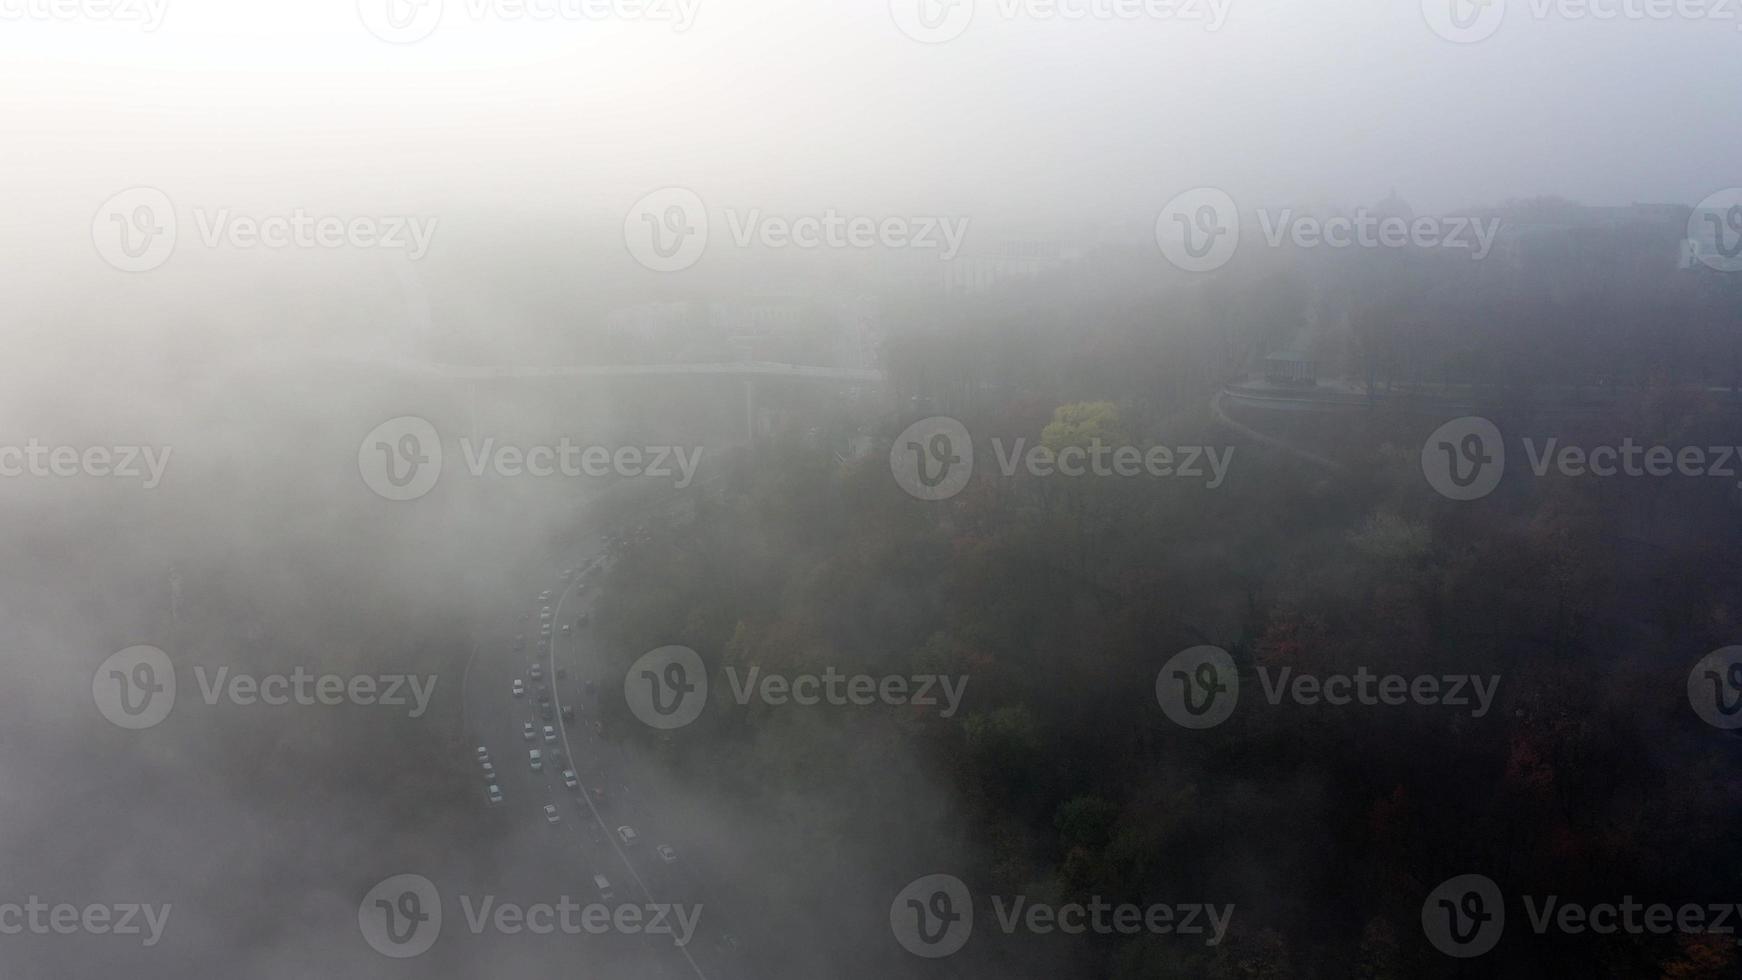 eine nebelverhangene Stadt. Stadtverkehr, Luftbild foto